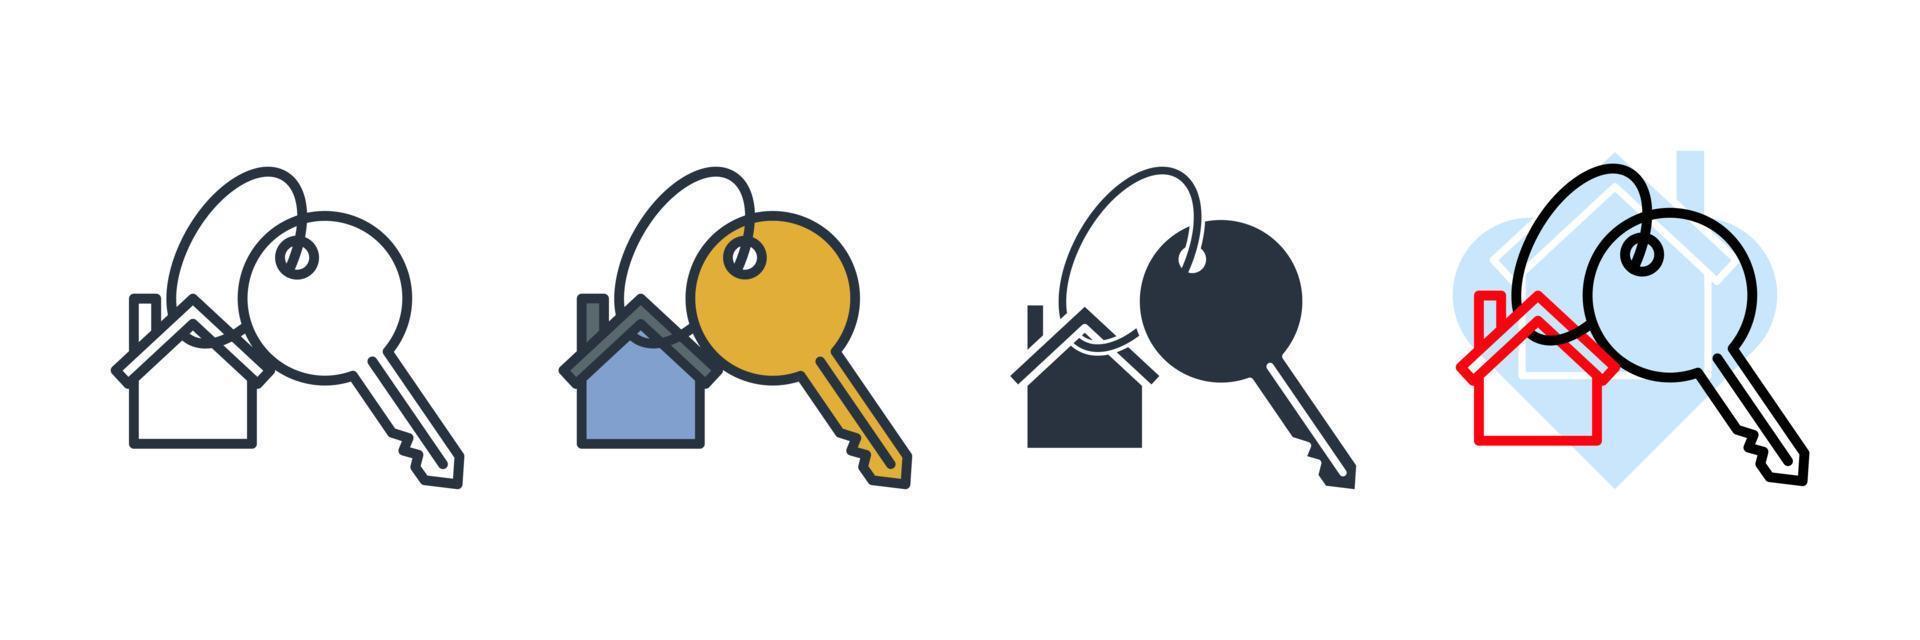 ilustración vectorial del logotipo del icono de la llave de la casa. plantilla de símbolo de llaves de casa para la colección de diseño gráfico y web vector